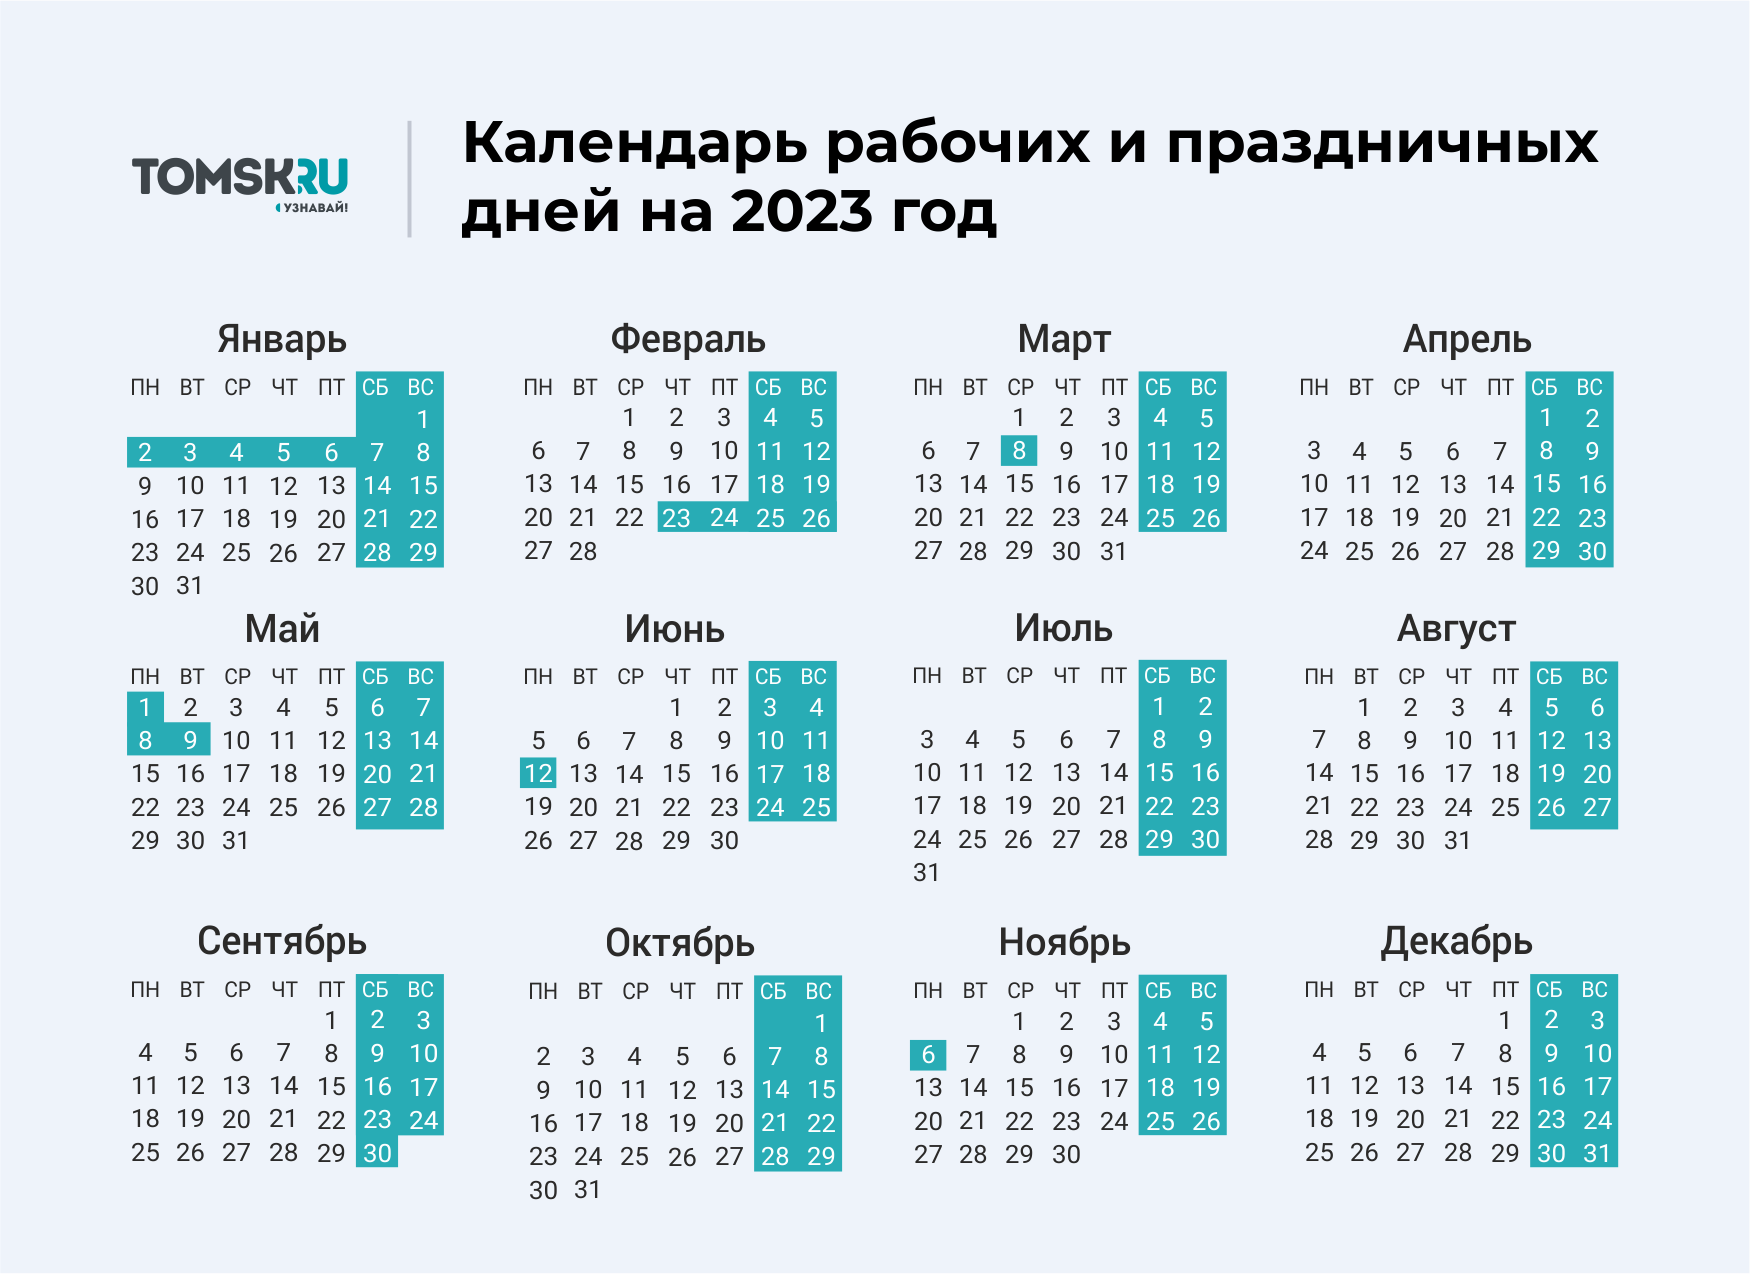 Когда праздники в мае 2024. Выходные дни в 2023 году в России календарь. Календарь выходных и праздничных дней на 2023 год в России. Календарь праздничных выходеыхв 2023 году. Календарь на 2023 год с праздниками и выходными выходные снизу.